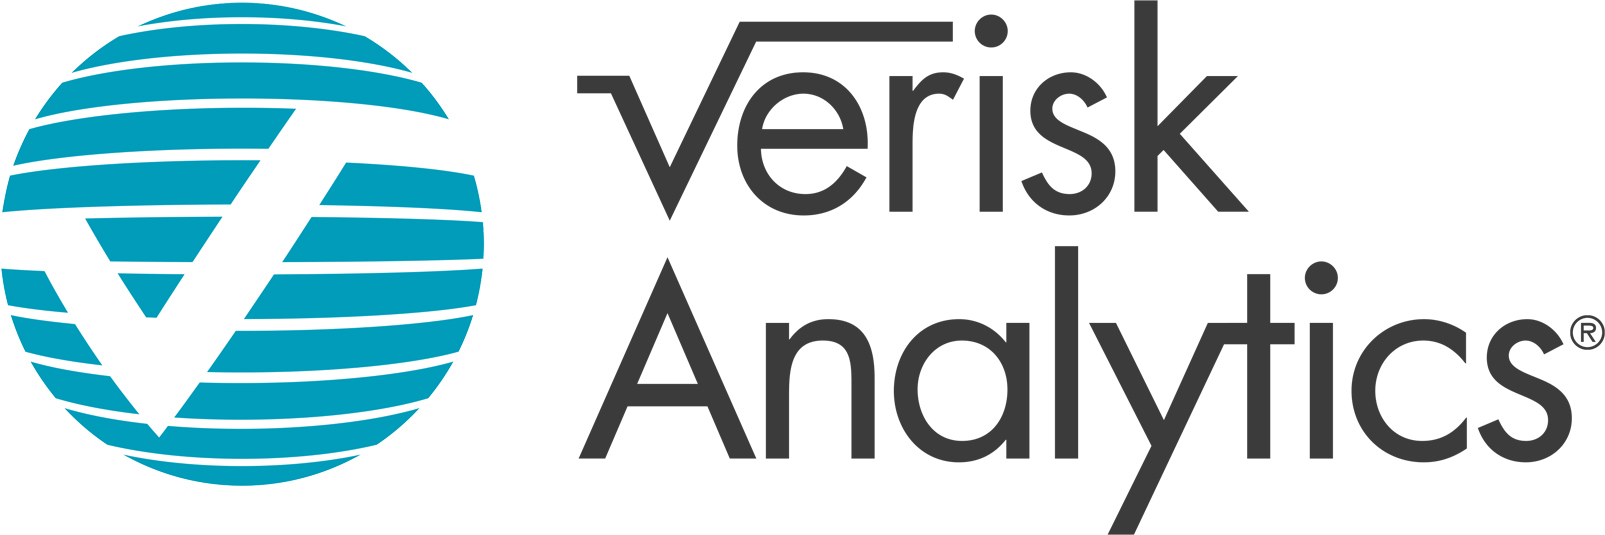 verisk analytics logo